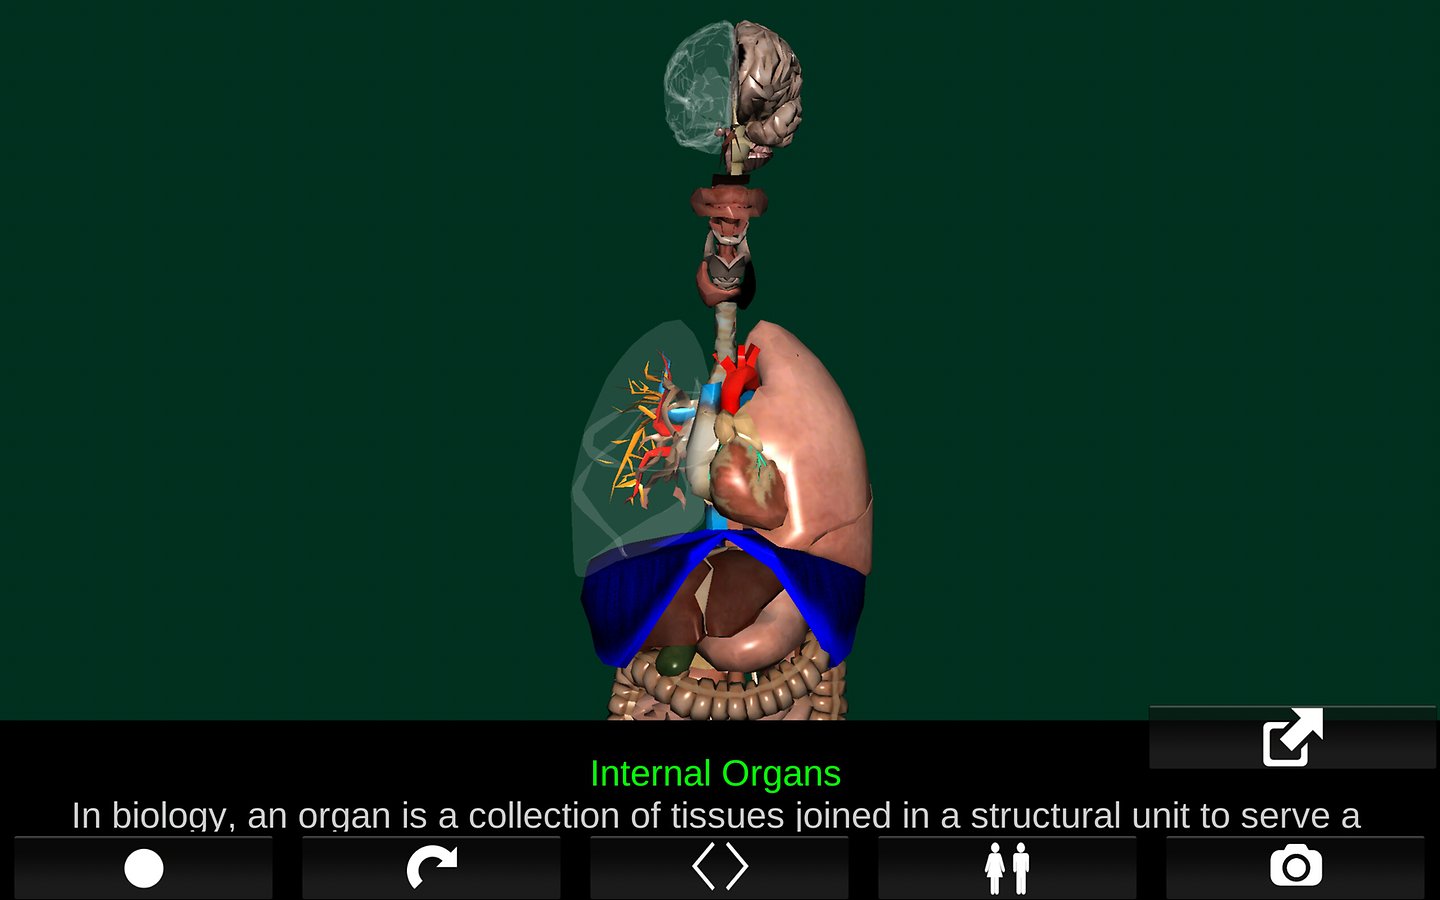 تطبيق Organs 3D يُقدّم نماذج ثلاثية الأبعاد لأجهزة جسم الإنسان مع شرح كل عضو